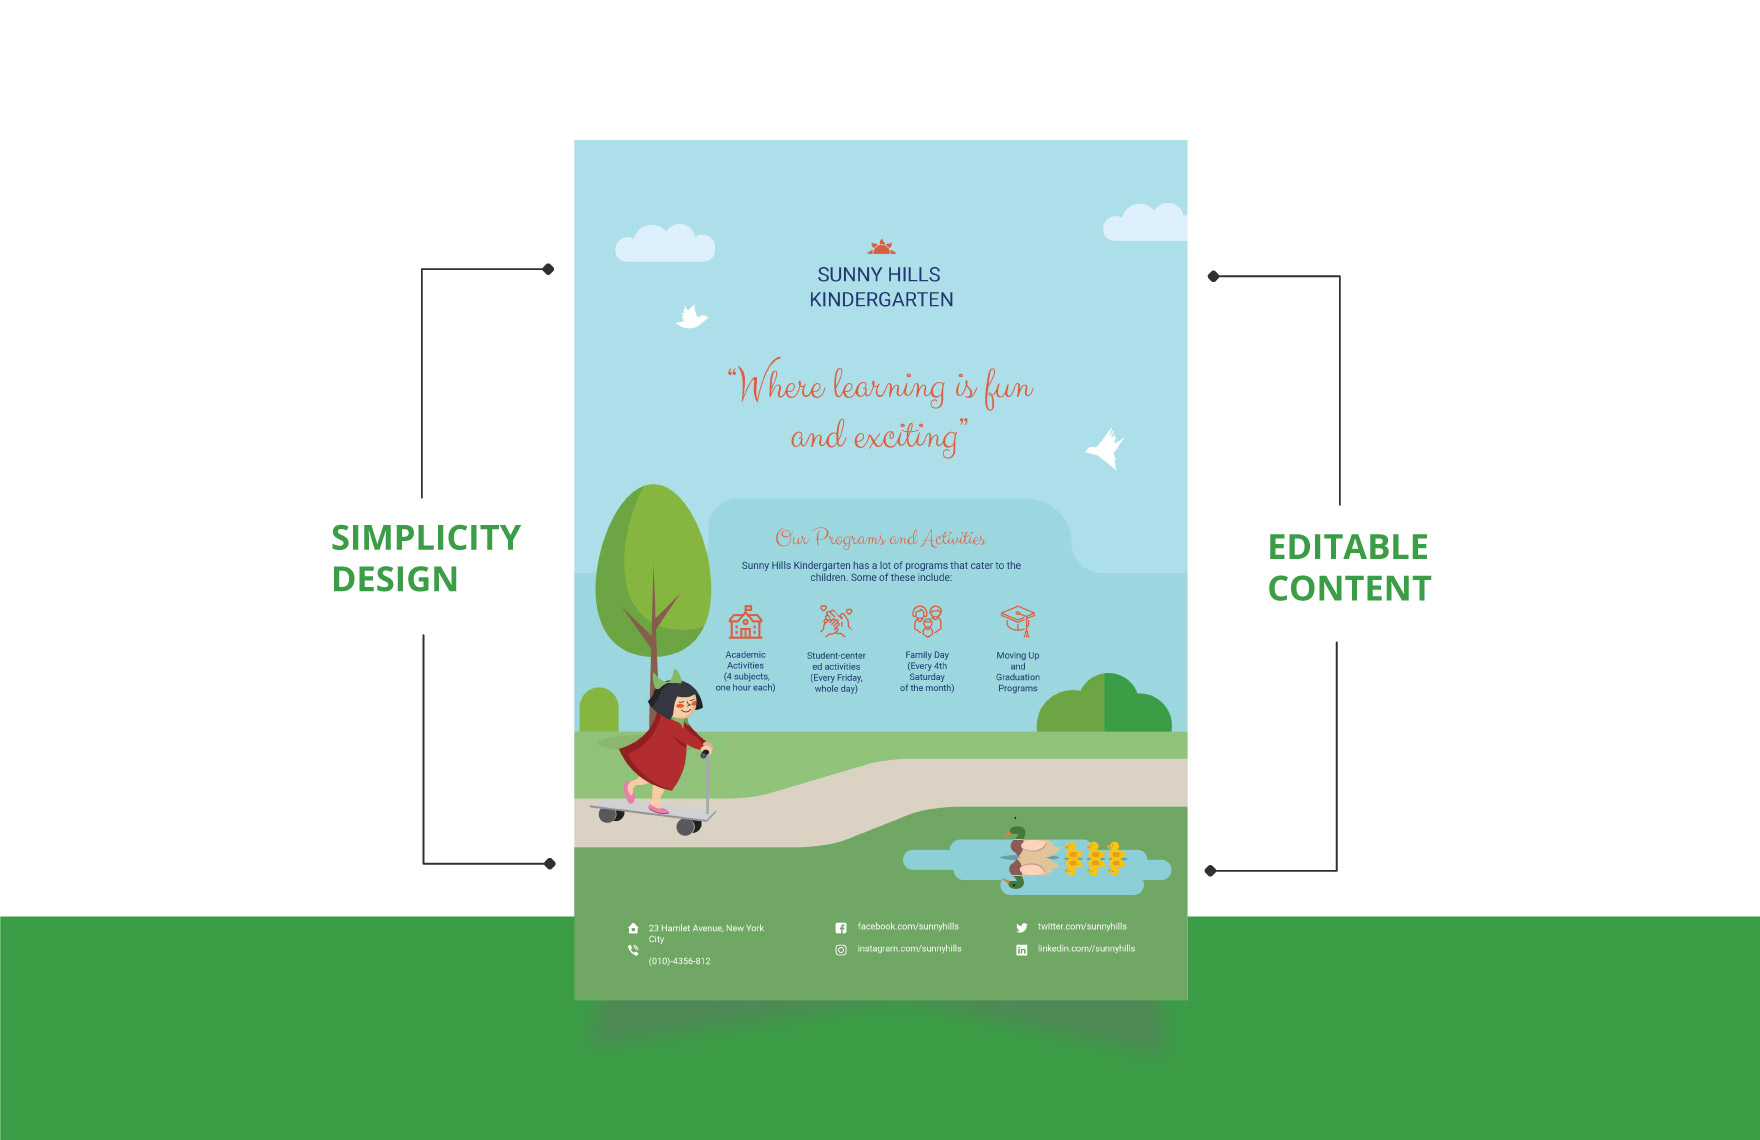 Simple Kindergarten Flyer Template